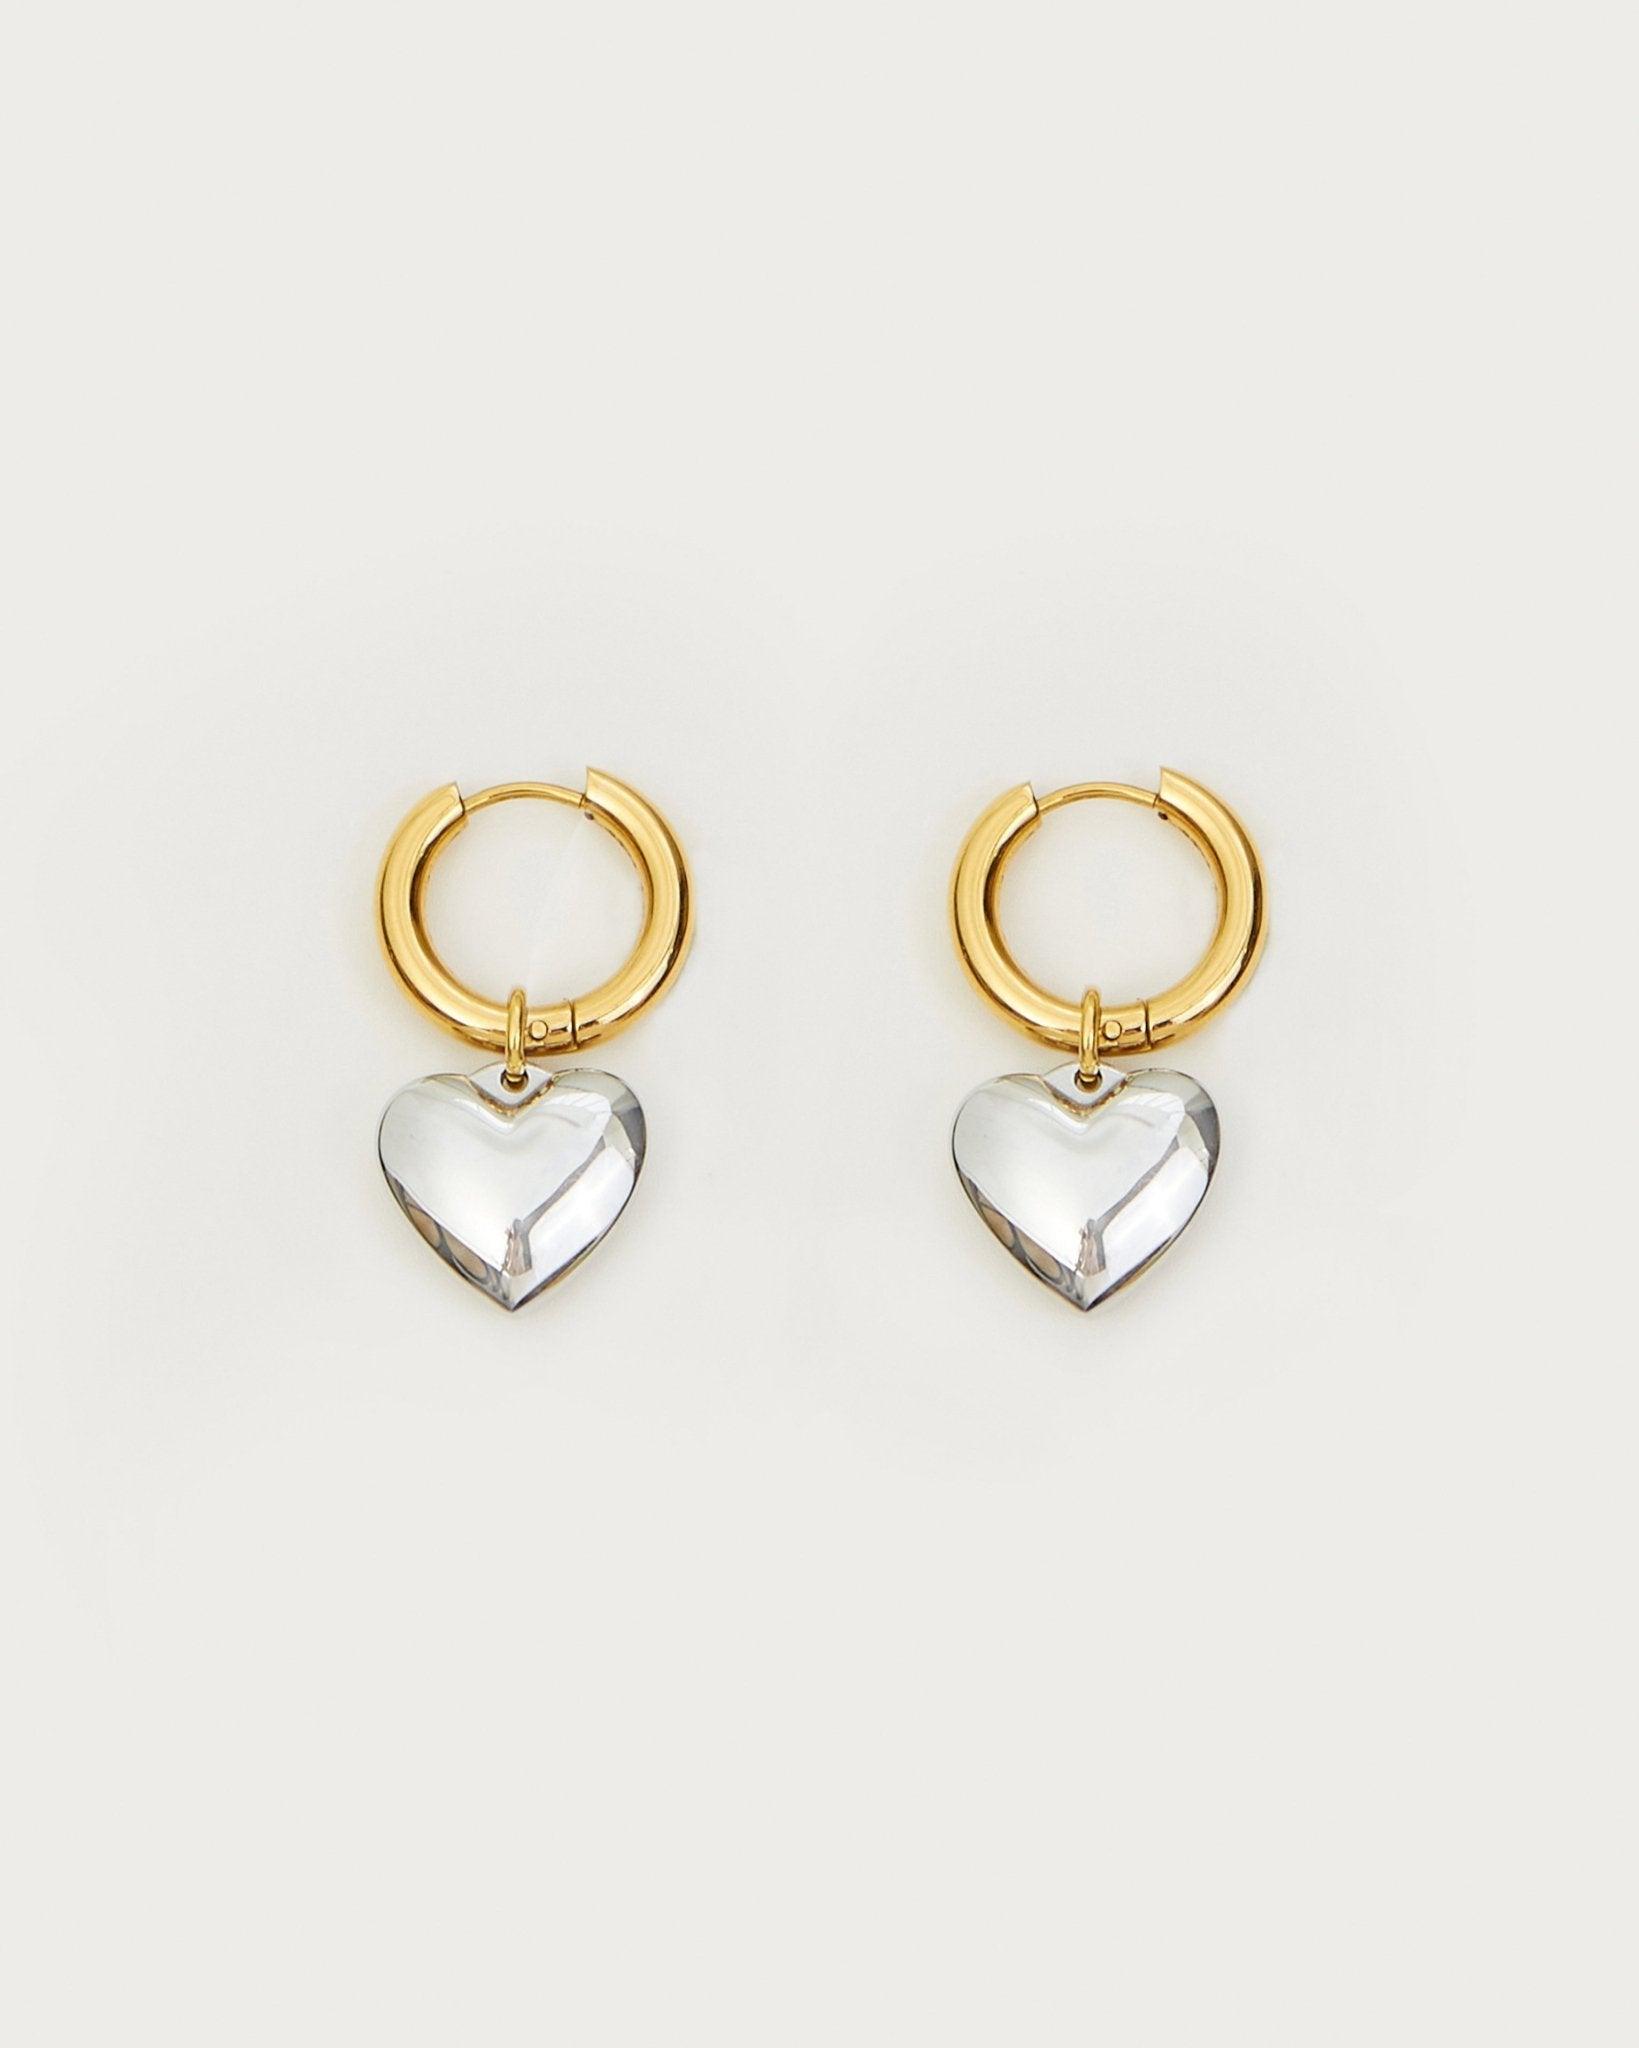 Audrey Heart Earrings - En Route Jewelry